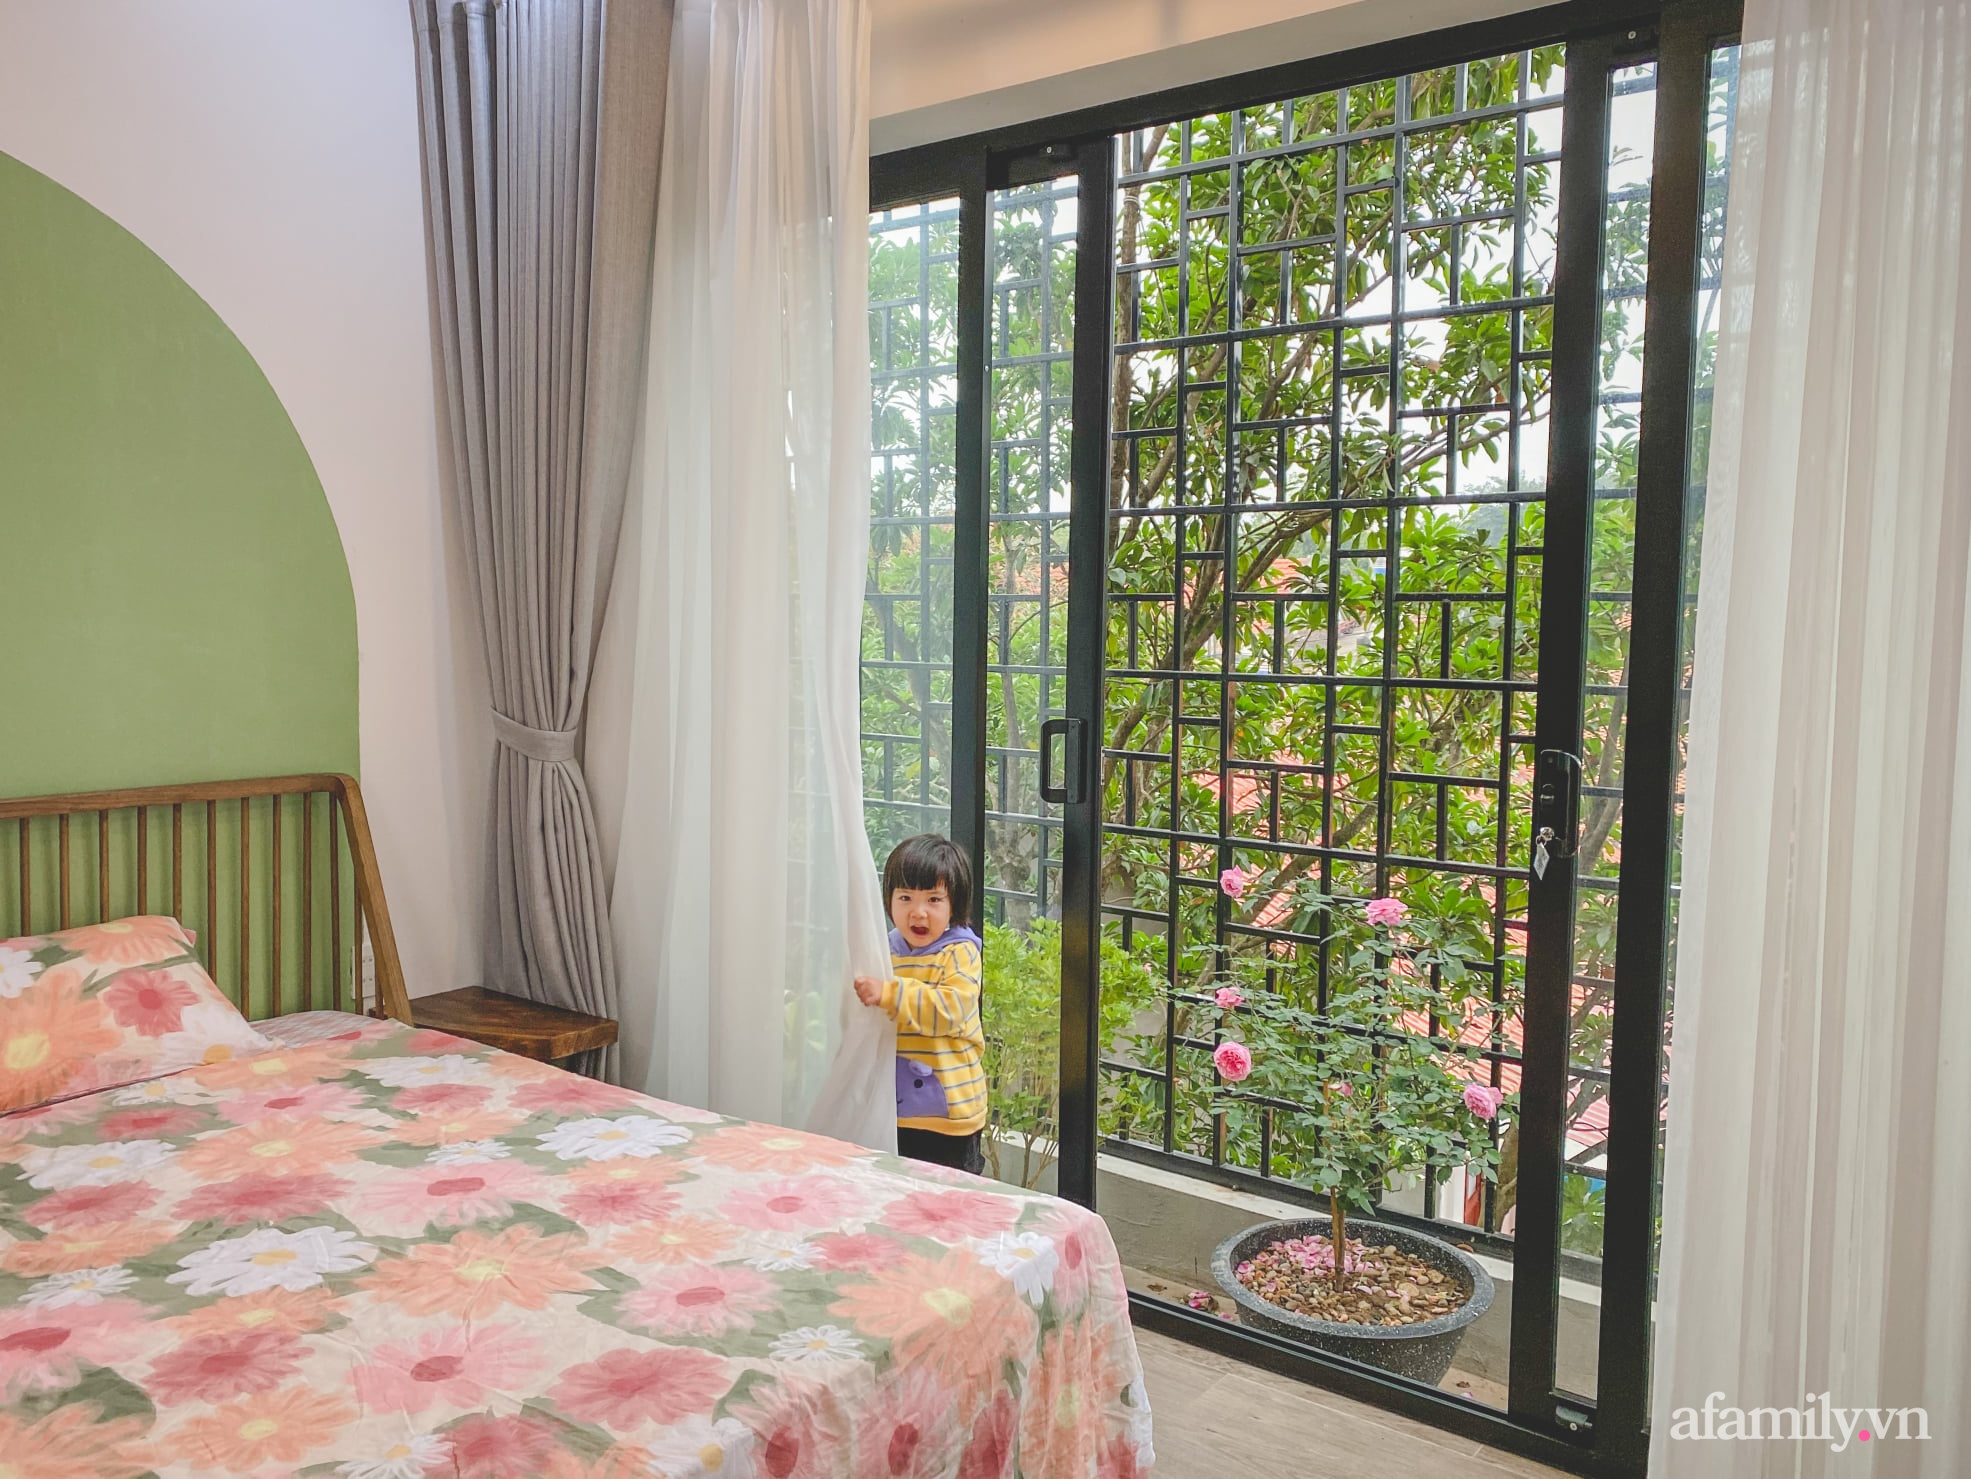 Căn nhà 90 m² đẹp bình yên, xanh mát bóng cây giữa làng cổ Đường Lâm, Hà Nội - Ảnh 16.